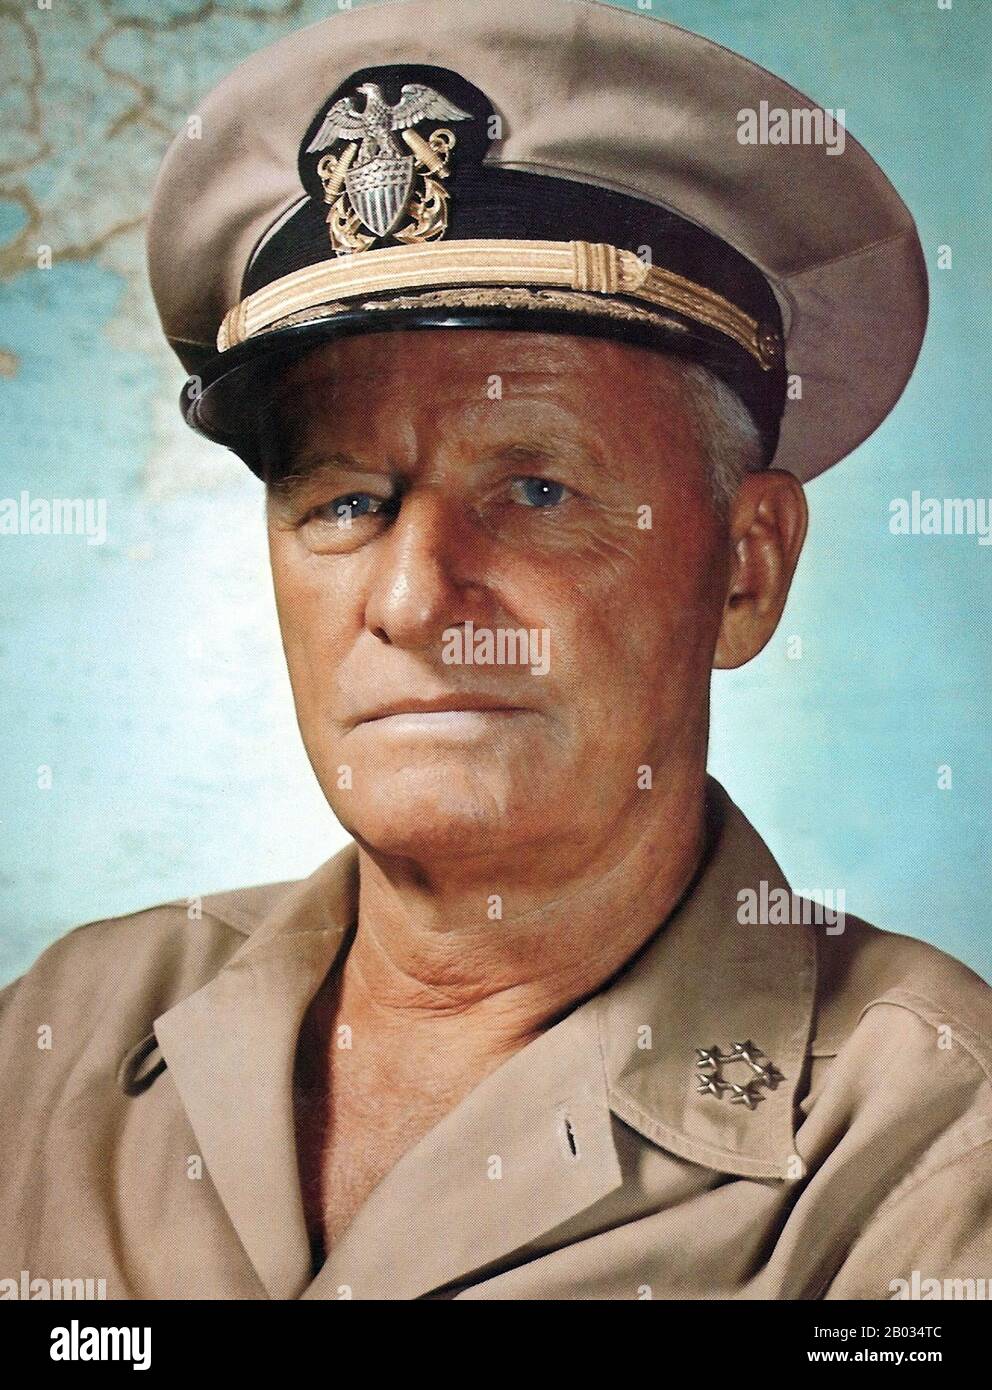 Le Fleet Admiral Chester William Nimitz, GCB, USN (24 février 1885 – 20 février 1966) était un amiral cinq étoiles de la Marine américaine. Il a exercé le double commandement du commandant en chef de la flotte des États-Unis du Pacifique (CinCPac) pour les forces navales américaines et le commandant en chef des Zones de l'océan Pacifique (CCPOA), pour les forces aériennes, terrestres et maritimes américaines et alliées pendant la seconde Guerre mondiale Il a été le chef de file de la Marine américaine sur les sous-marins, ainsi que chef du Bureau de navigation de la Marine en 1939. Il a été chef des opérations navales (ONC) de 1945 à 1947. Il était le dernier Fleet A survivant des États-Unis Banque D'Images